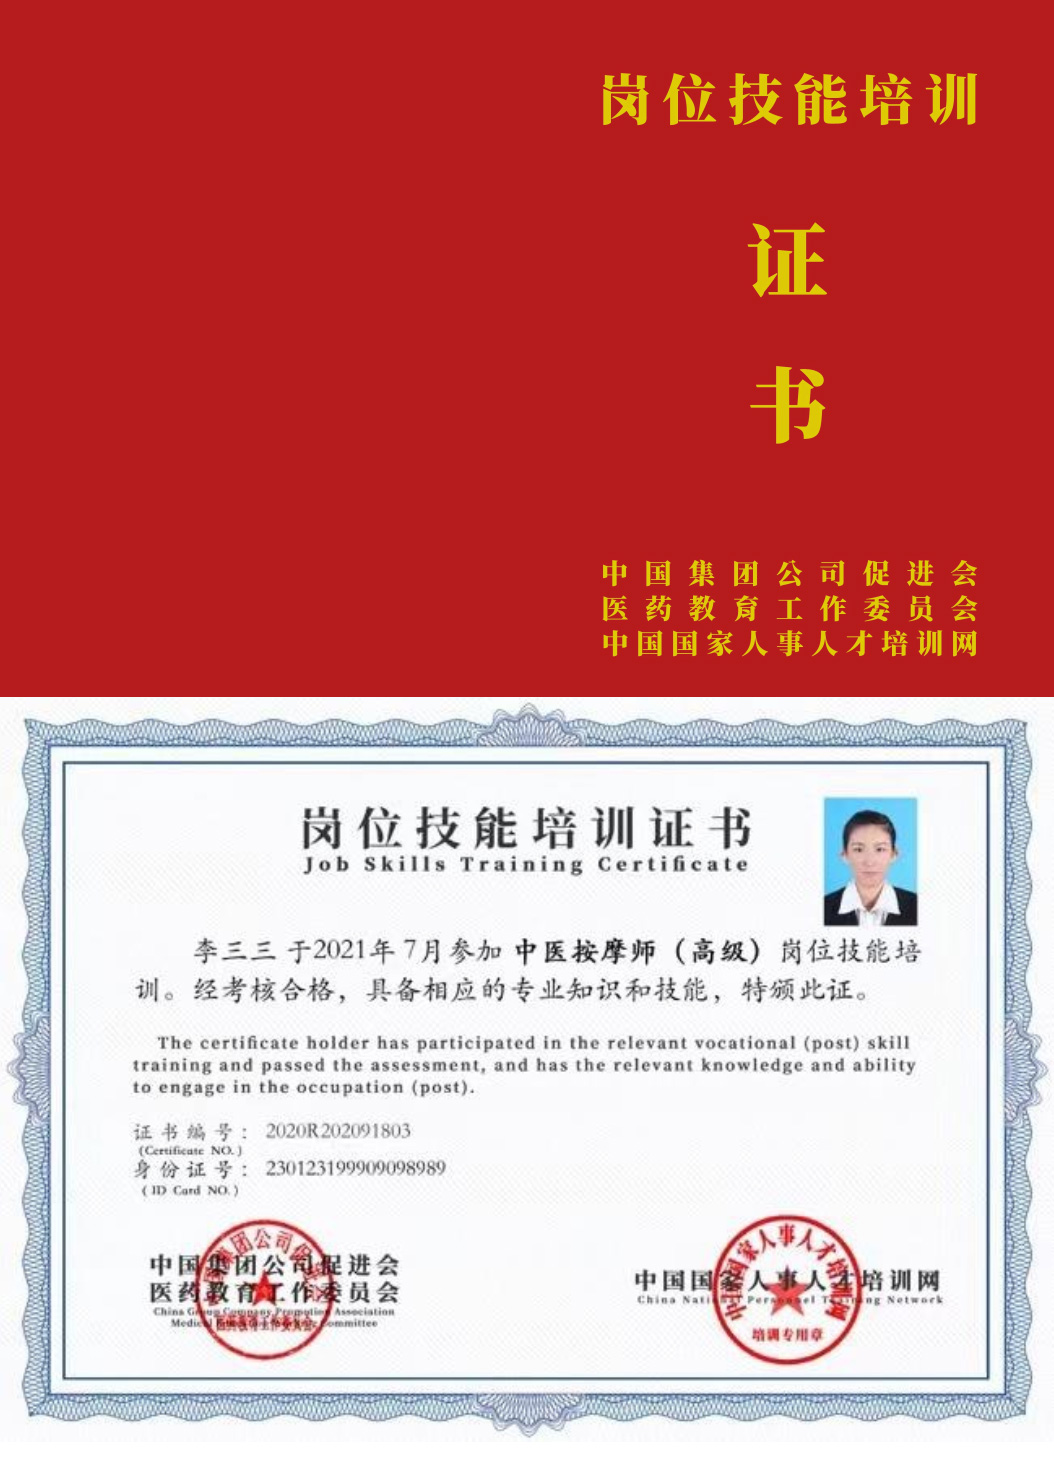 中国国家人事人才培训网 口腔种植师 岗位技能培训证书